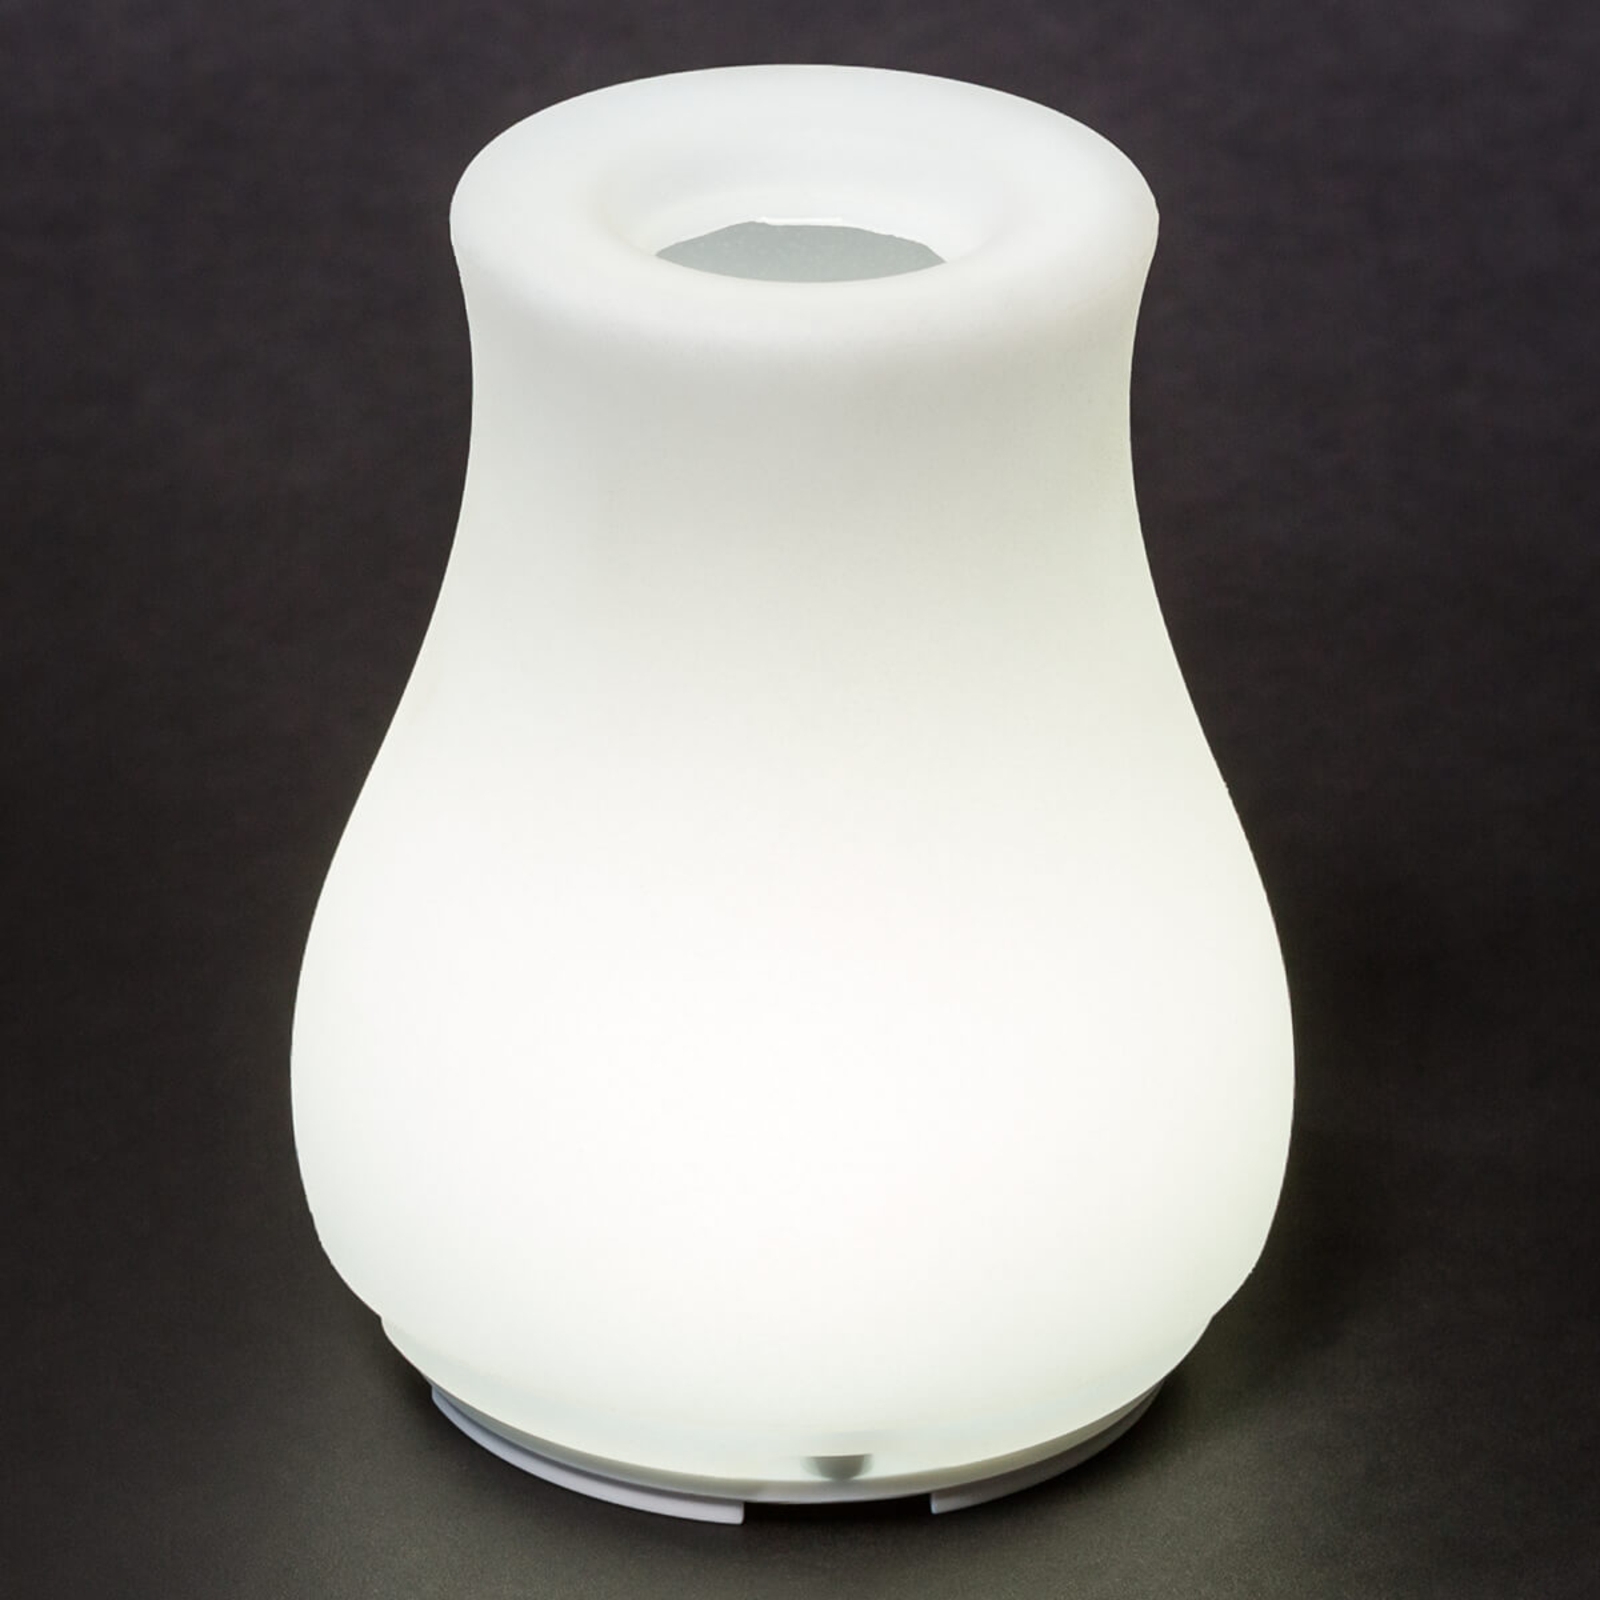 Olio - steuerbare LED-Lichtquelle und Vase